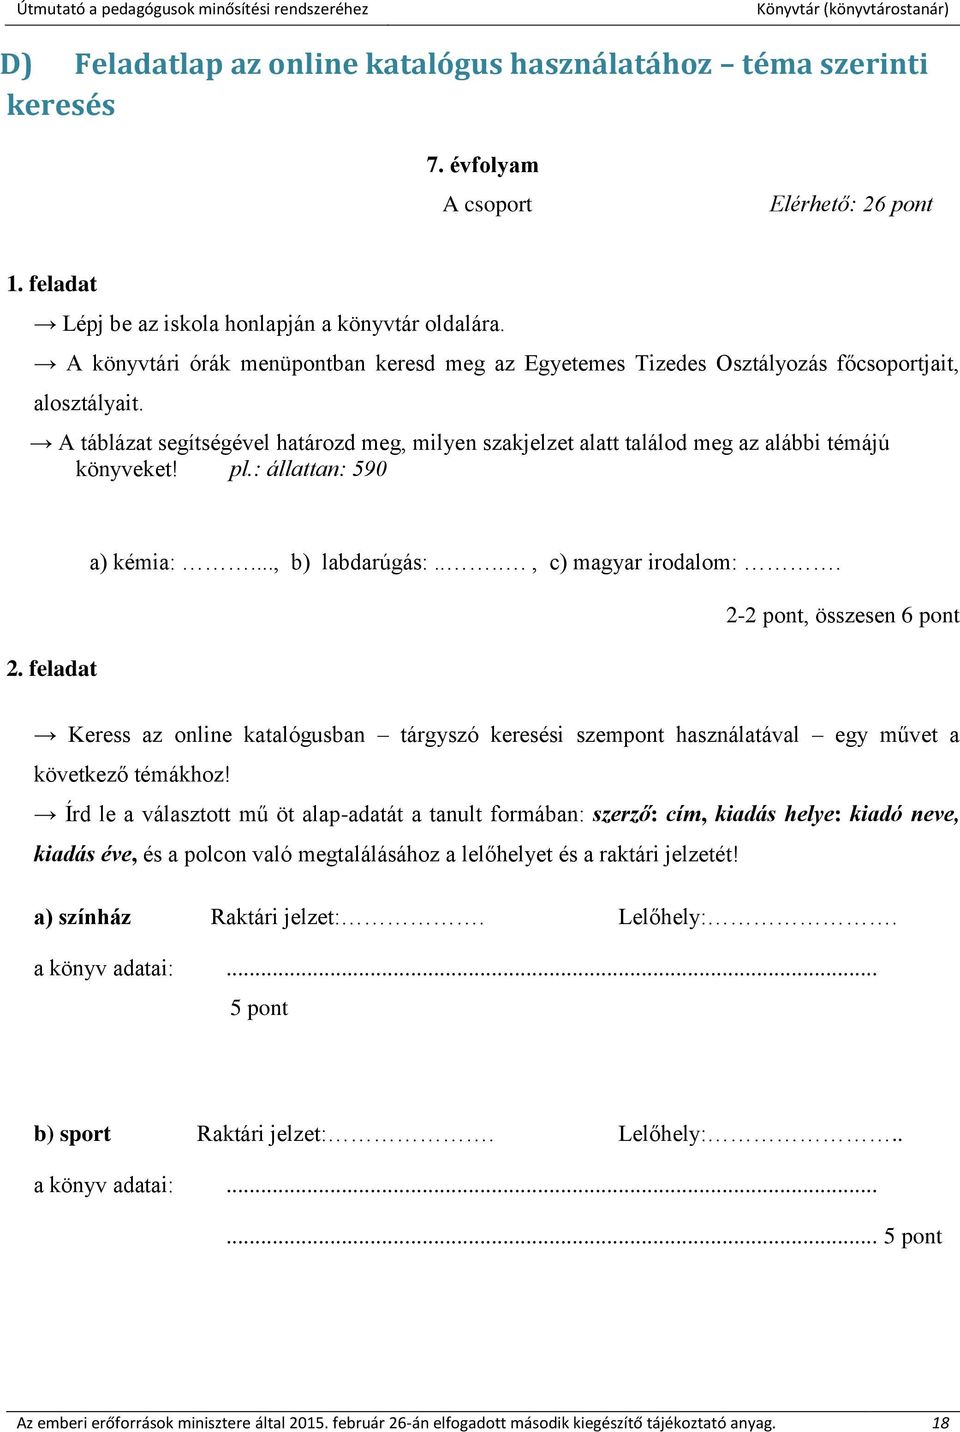 A táblázat segítségével határozd meg, milyen szakjelzet alatt találod meg az alábbi témájú könyveket! pl.: állattan: 590 2. feladat a) kémia:..., b) labdarúgás:...., c) magyar irodalom:.